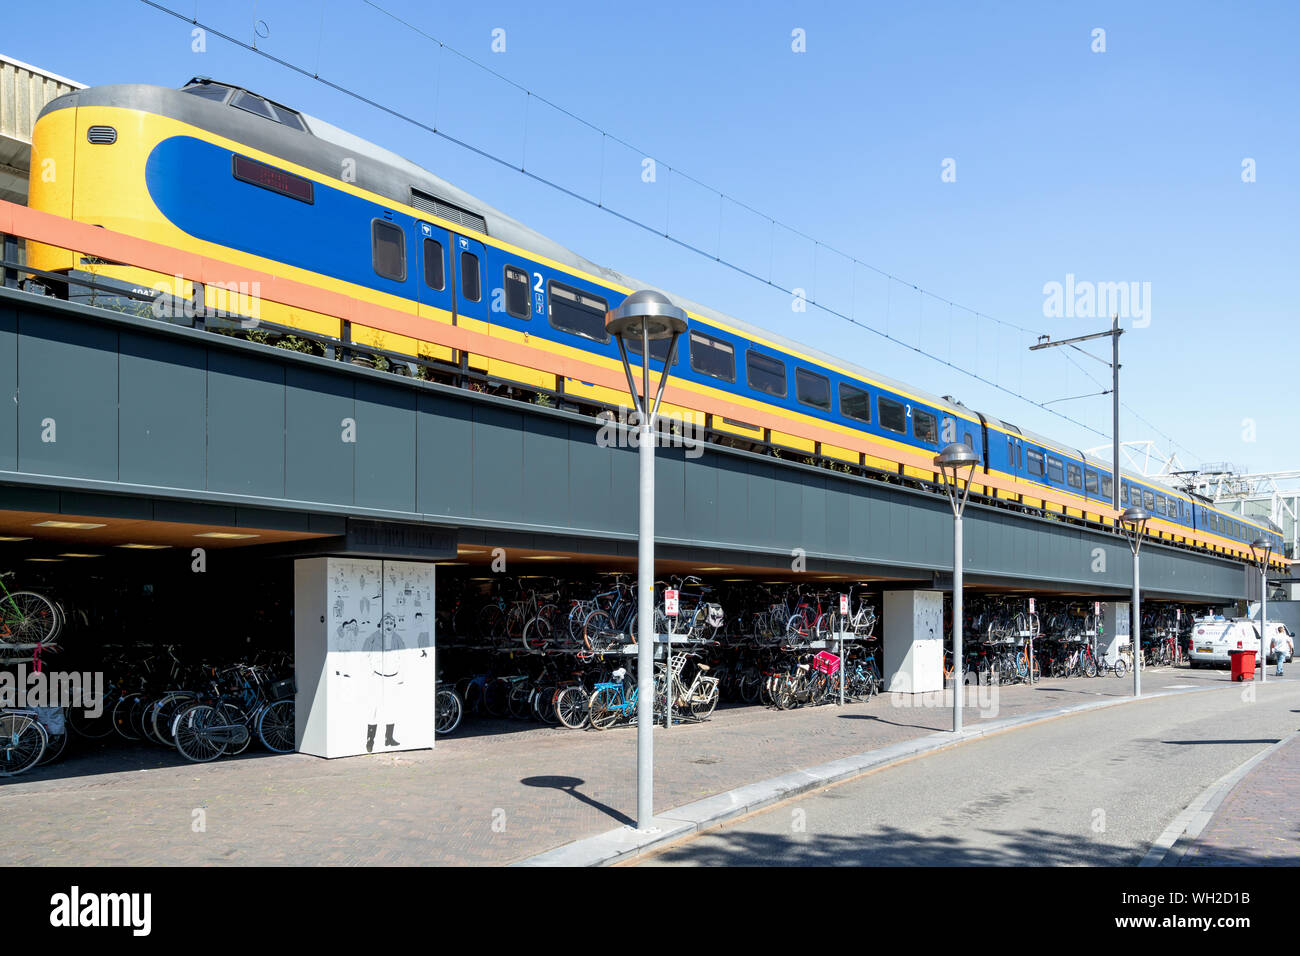 NS Intercity Materieel in Leiden Centraal. Der Intercity Materieel ist eine elektrische Triebzüge vom Typ betrieben durch die Nederlandse Spoorwegen. Stockfoto